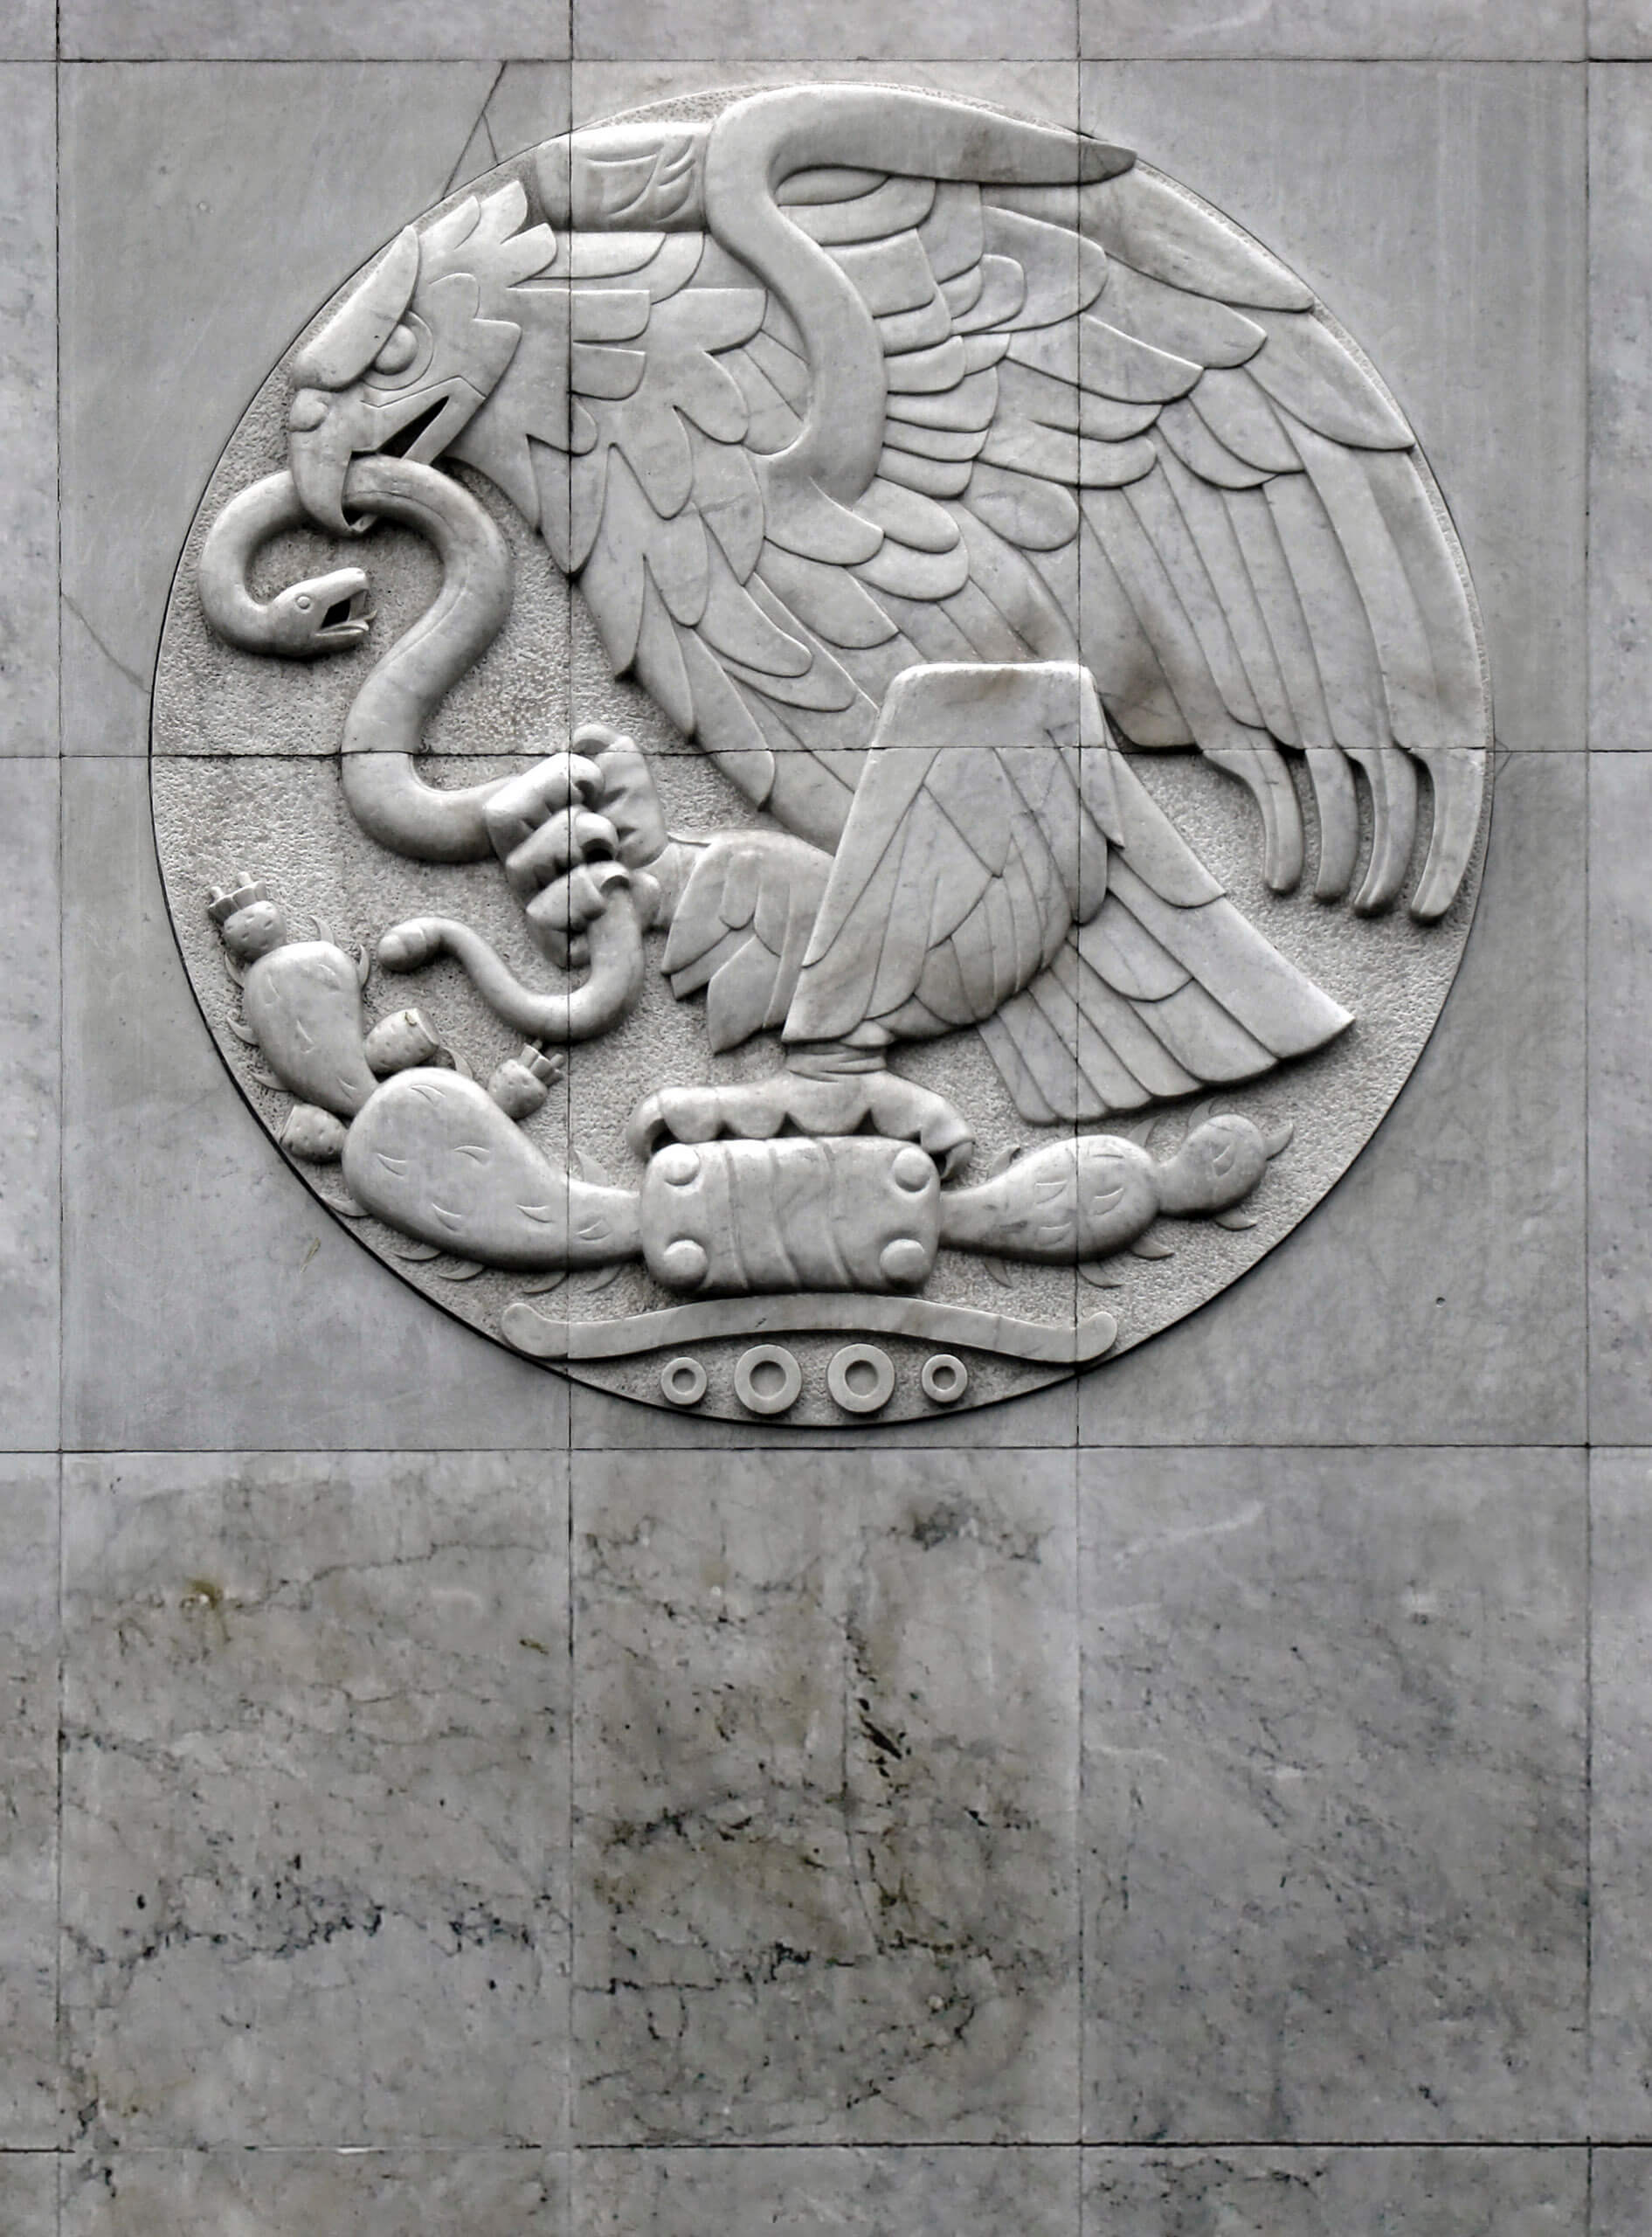 Desmantelamiento y reinstalación del escudo nacional | Tercerunquinto. Obra inconclusa | Museo Amparo, Puebla